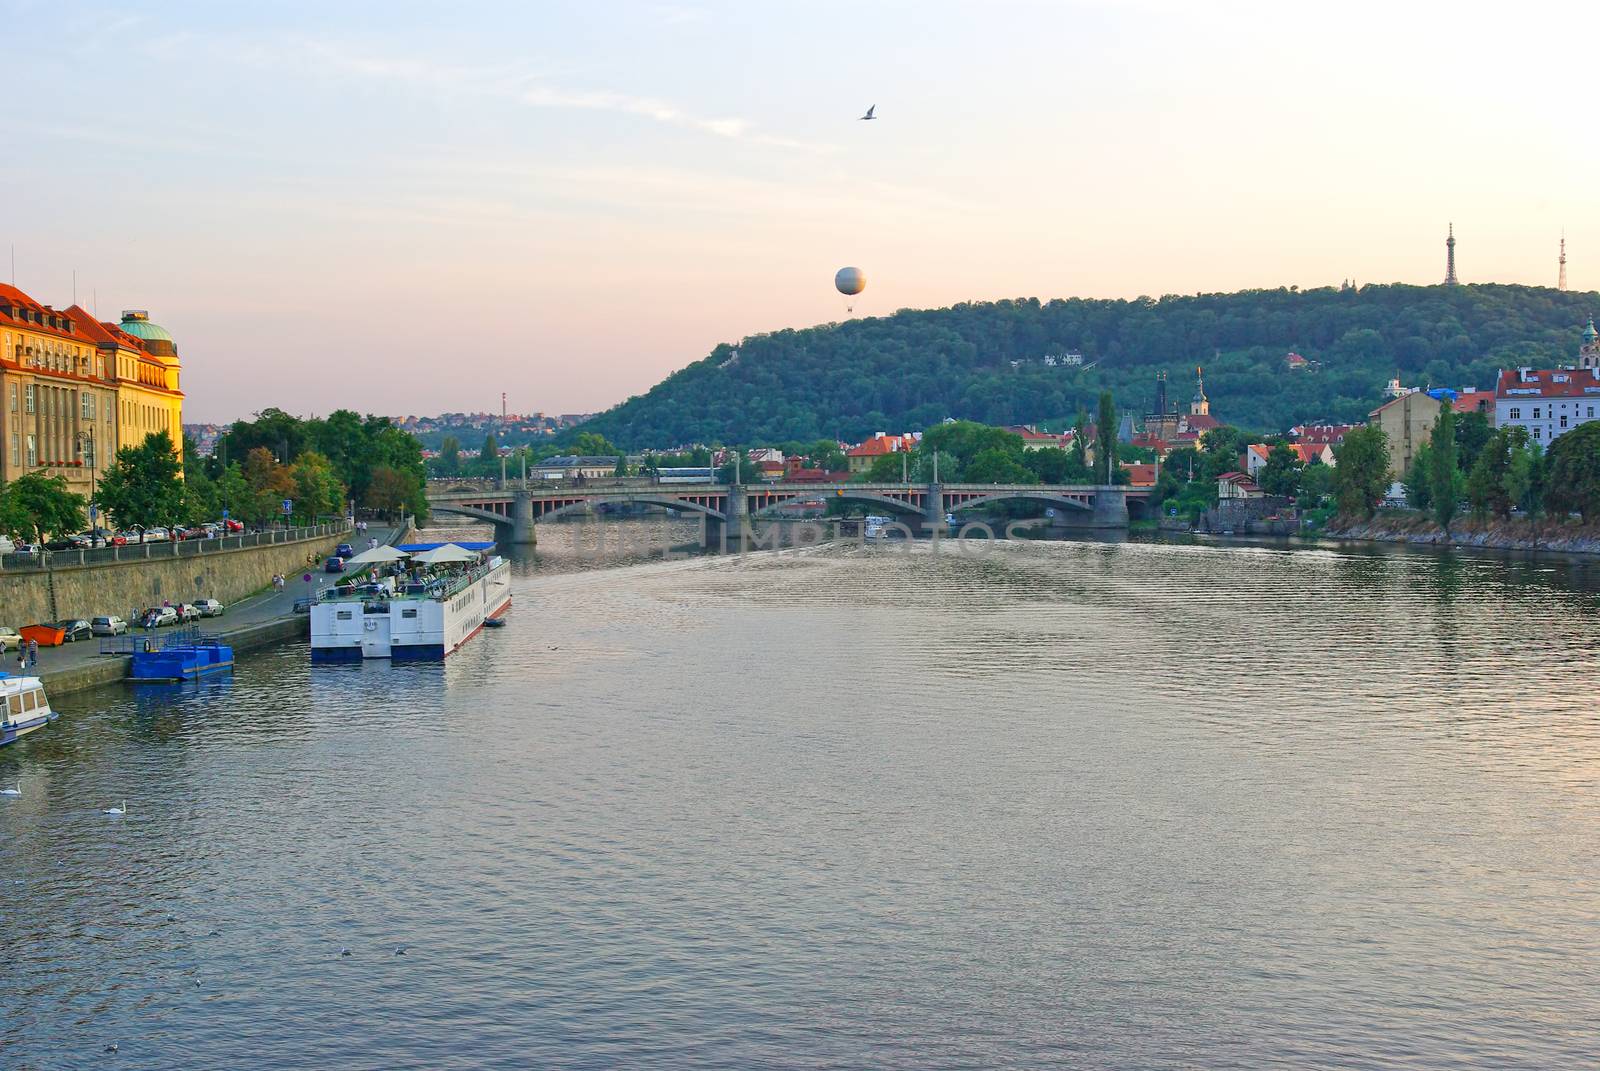 Prague tourism on Vltava river by savcoco